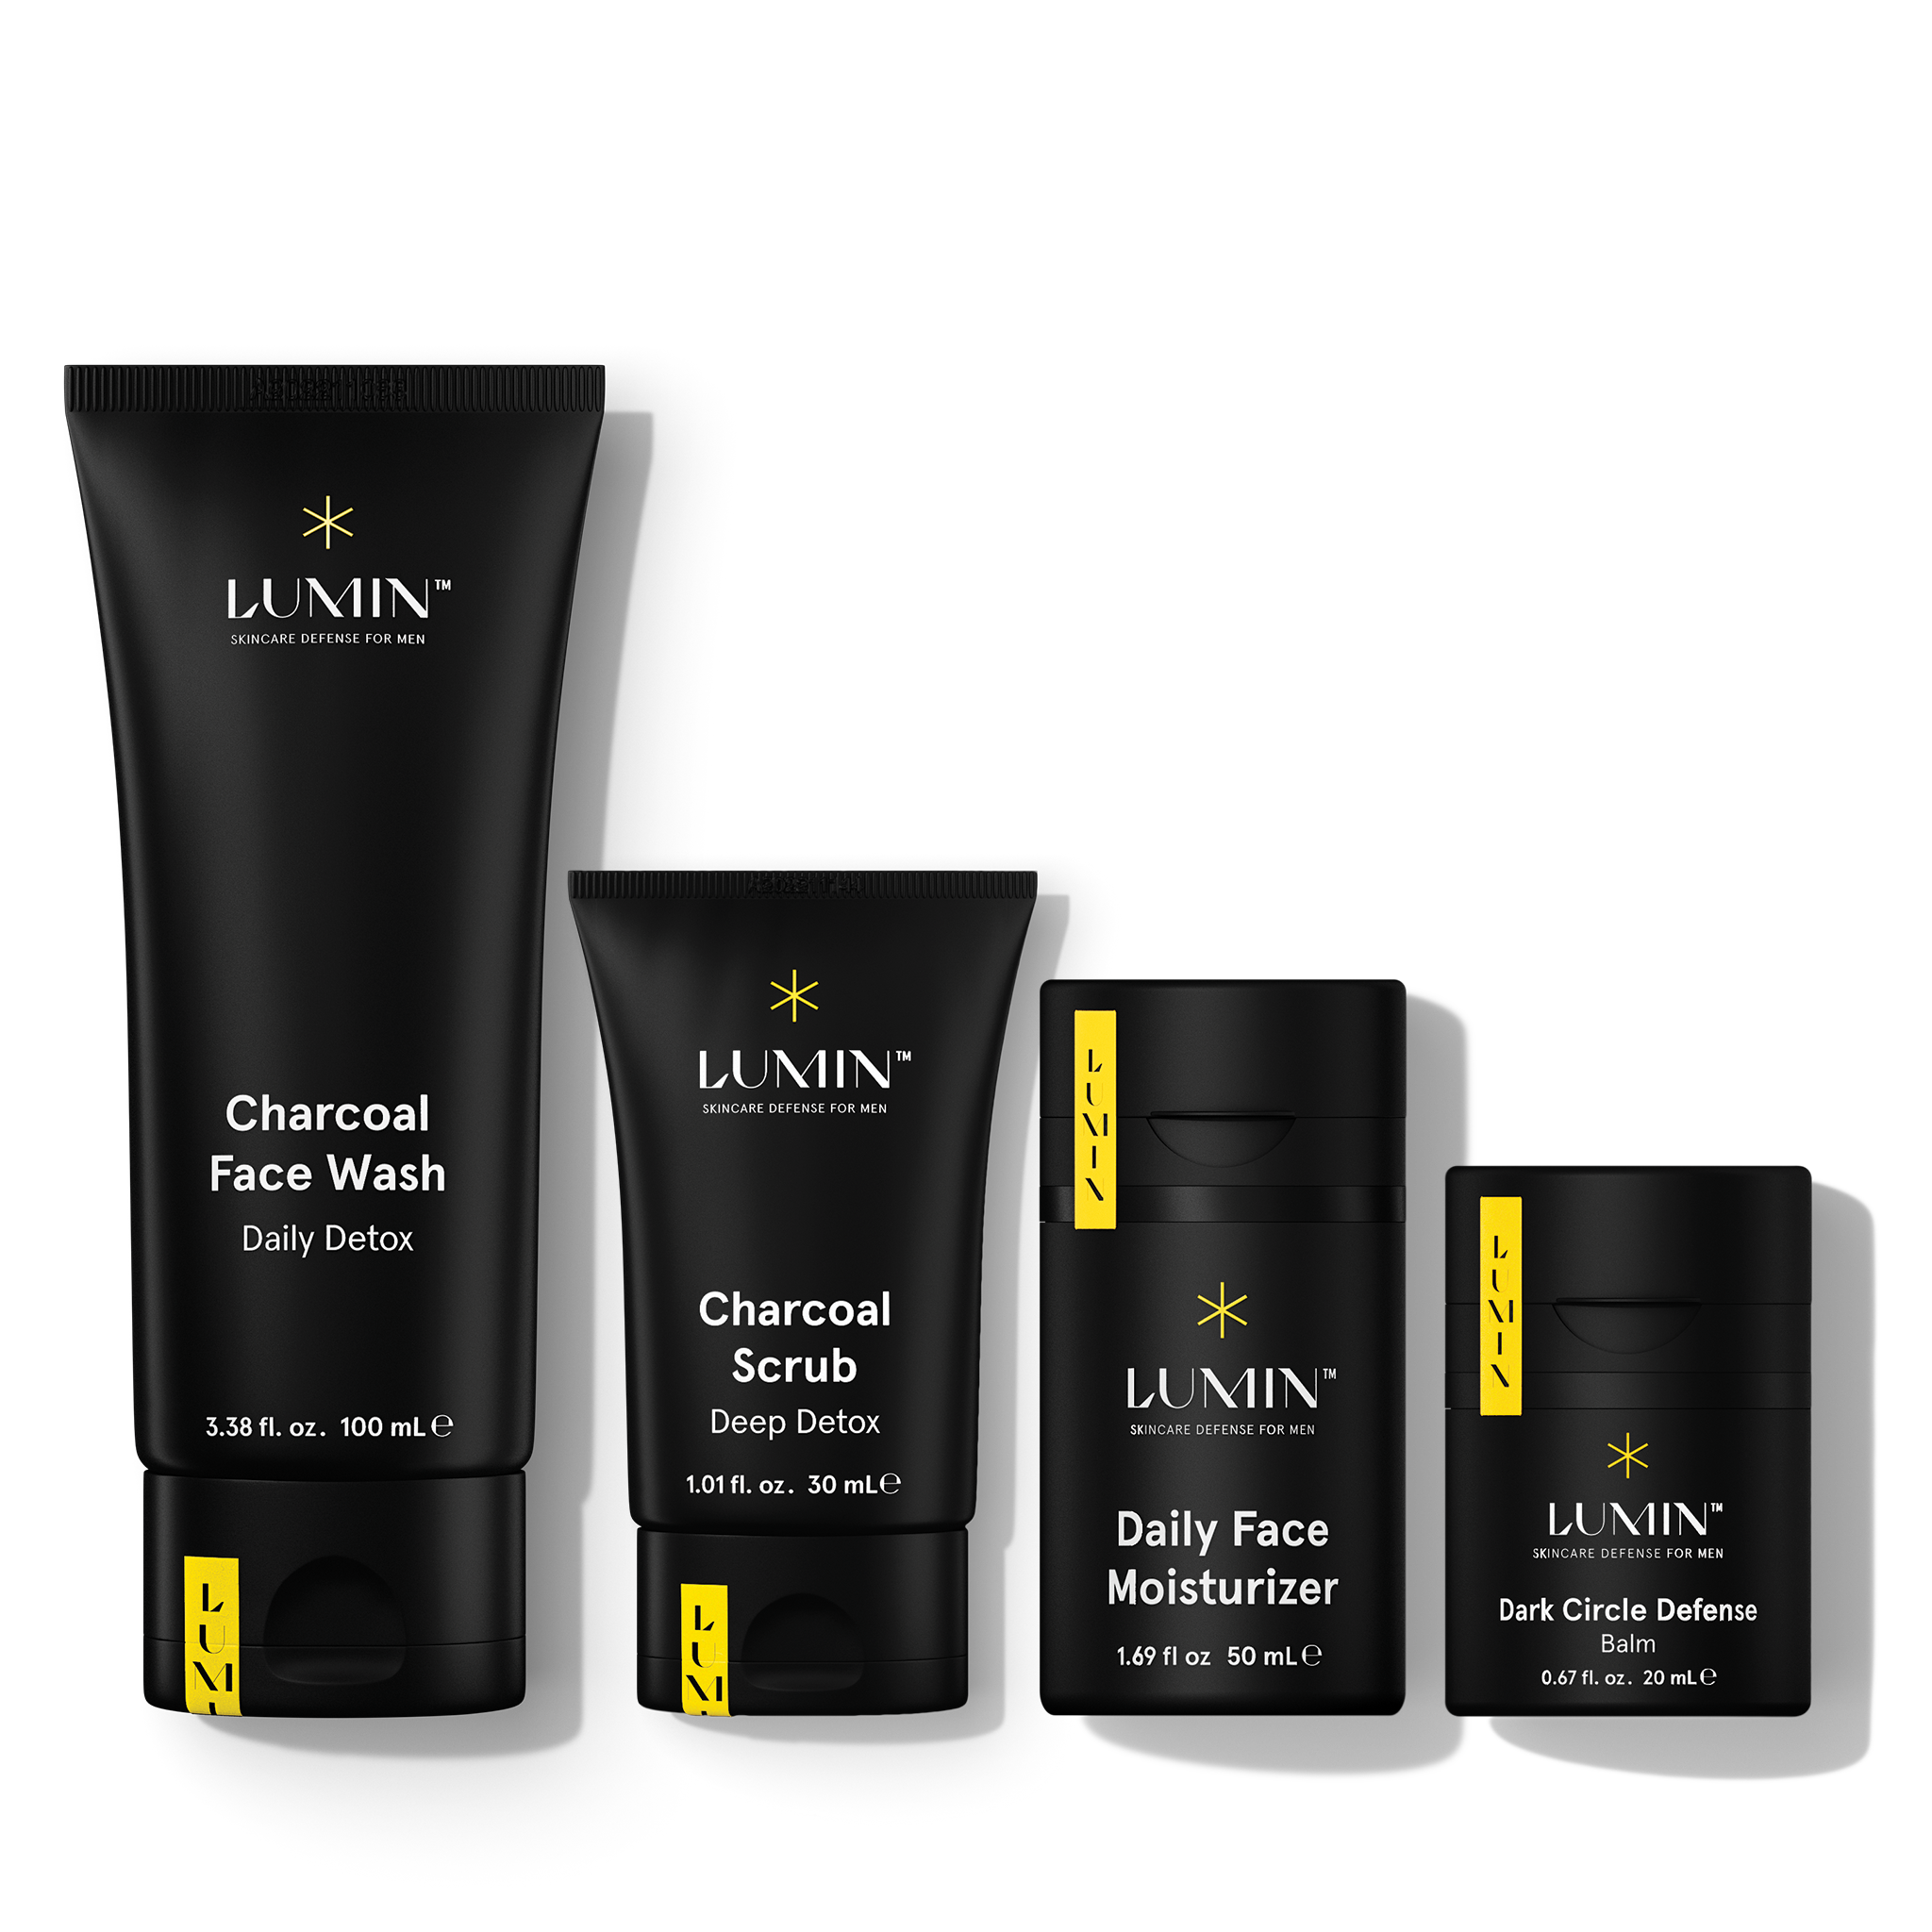 Lumin skin management for men